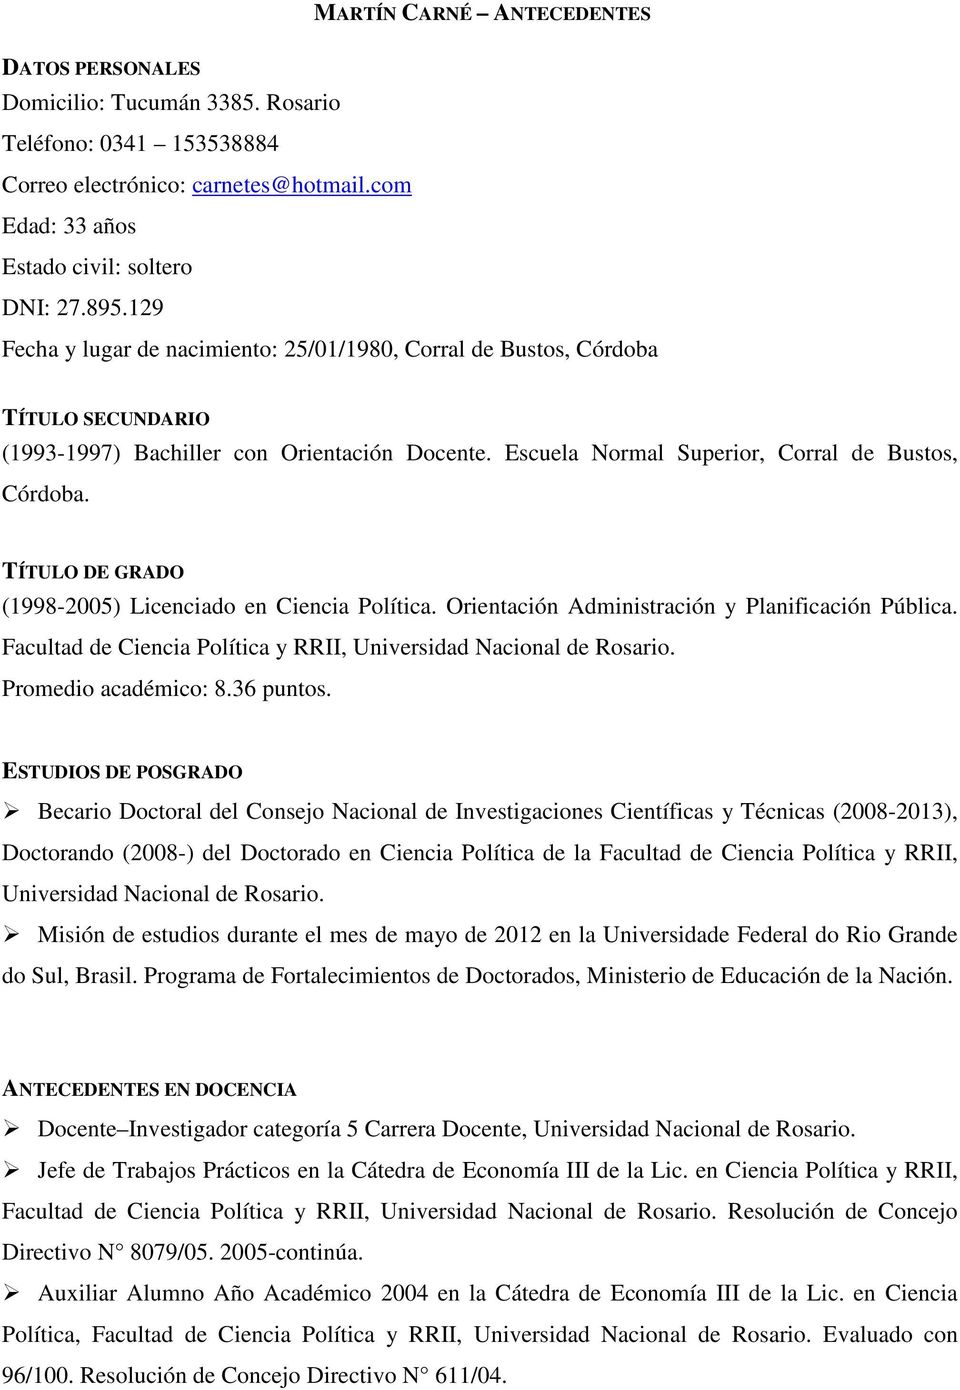 TÍTULO DE GRADO (1998-2005) Licenciado en Ciencia Política. Orientación Administración y Planificación Pública. Facultad de Ciencia Política y RRII, Universidad Nacional de Rosario.